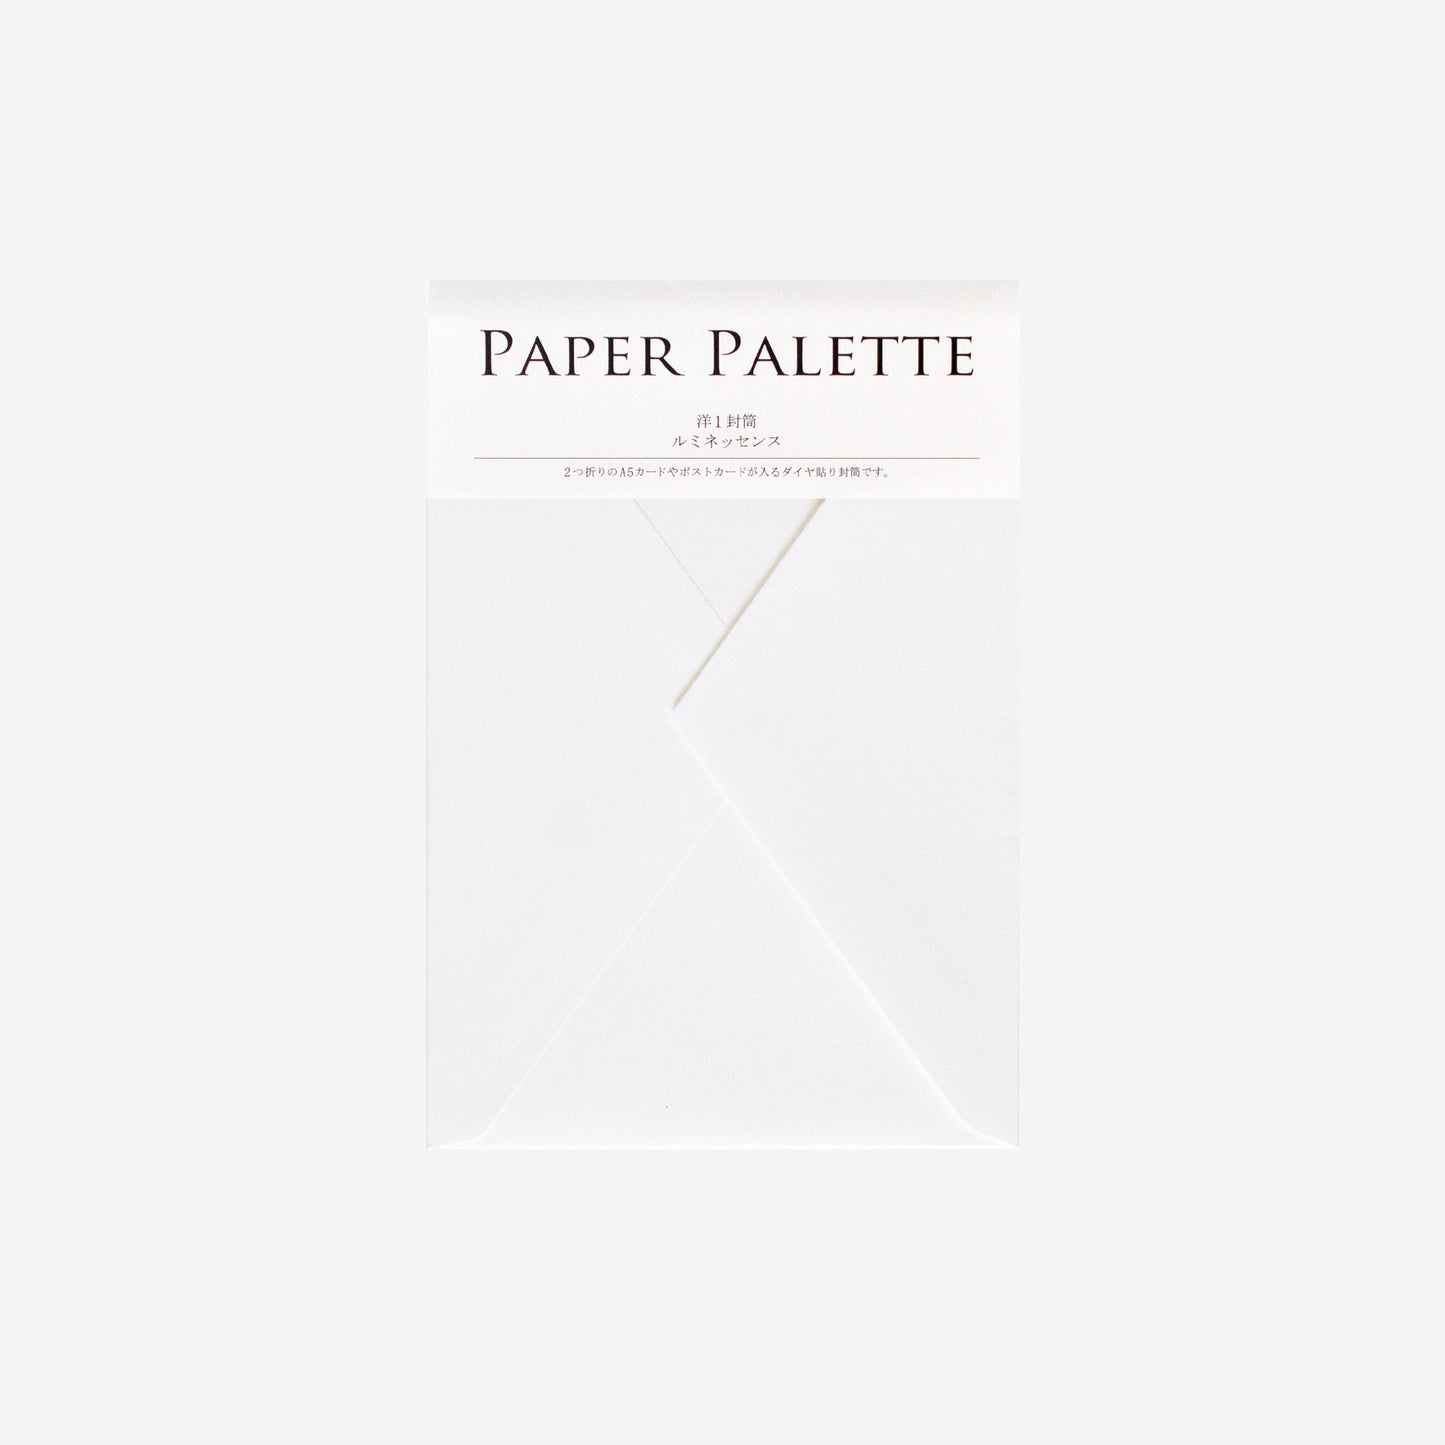 PAPER PALETTE 洋1封筒 ルミネッセンス